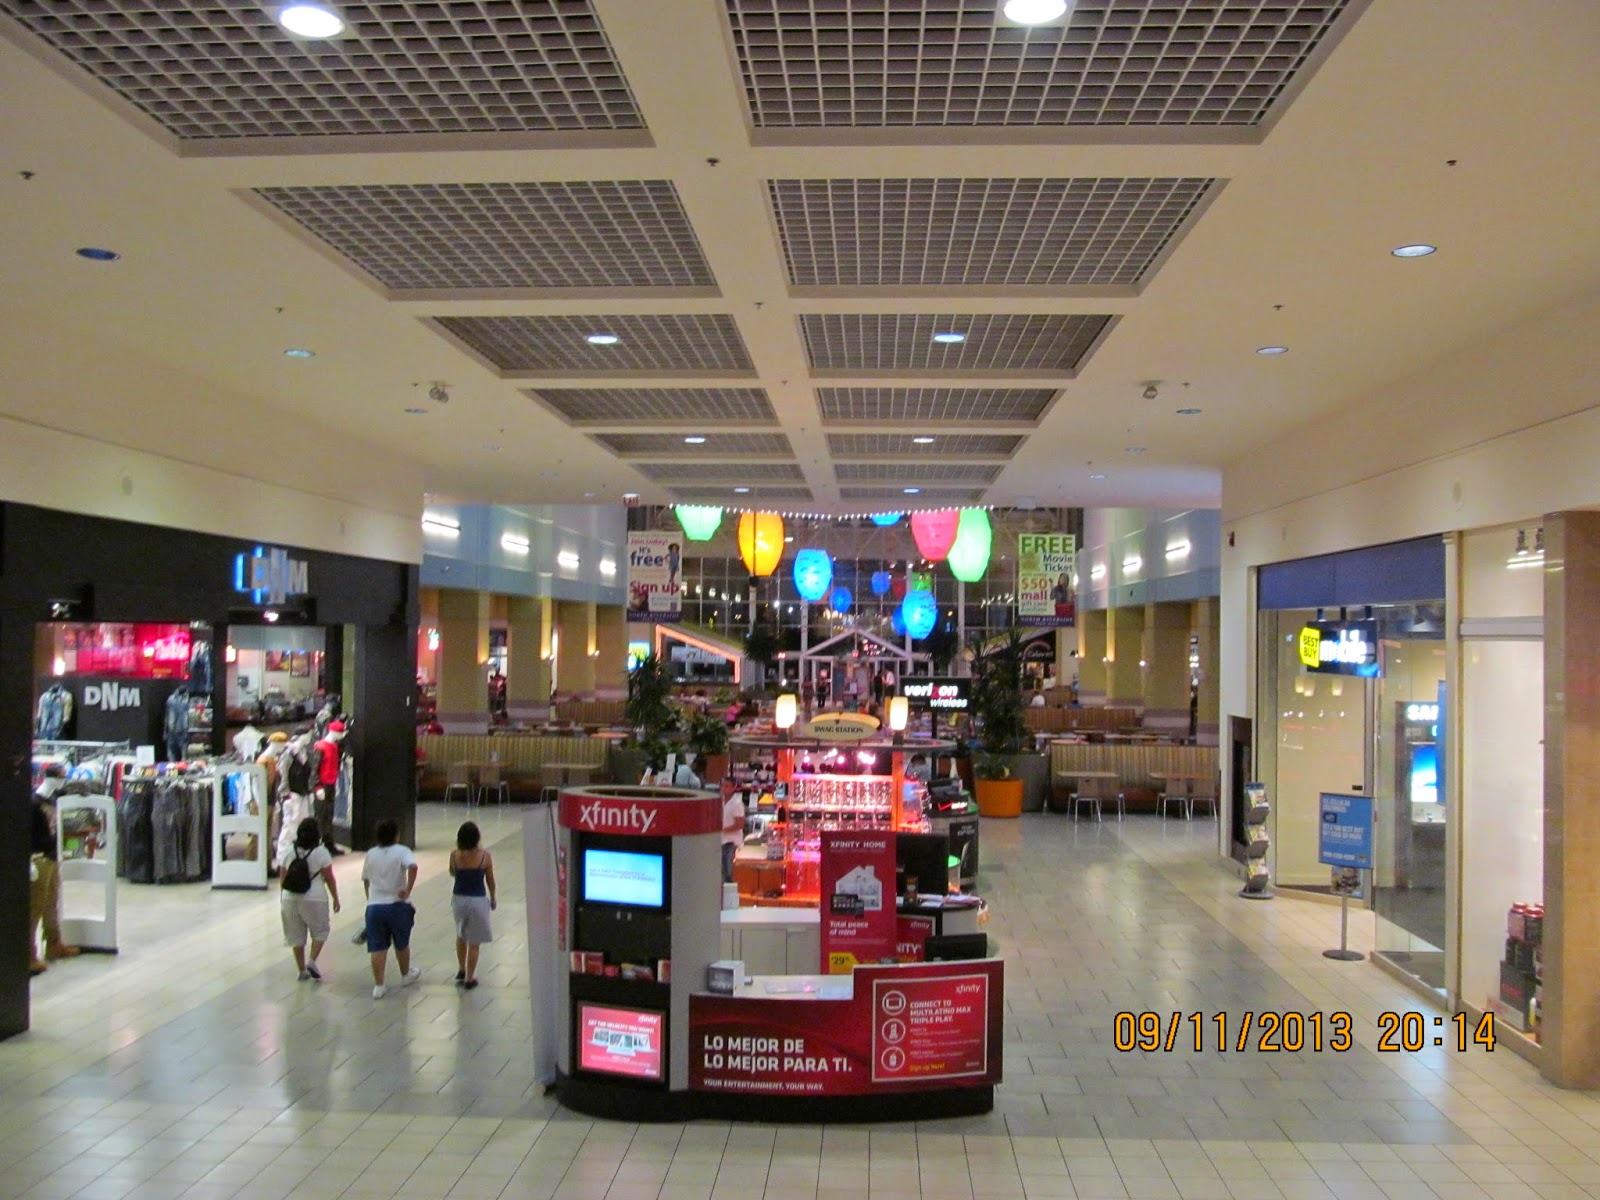 North Riverside Park Mall (120 stores) - shopping in North Riverside,  Illinois IL 60546 - MallsCenters